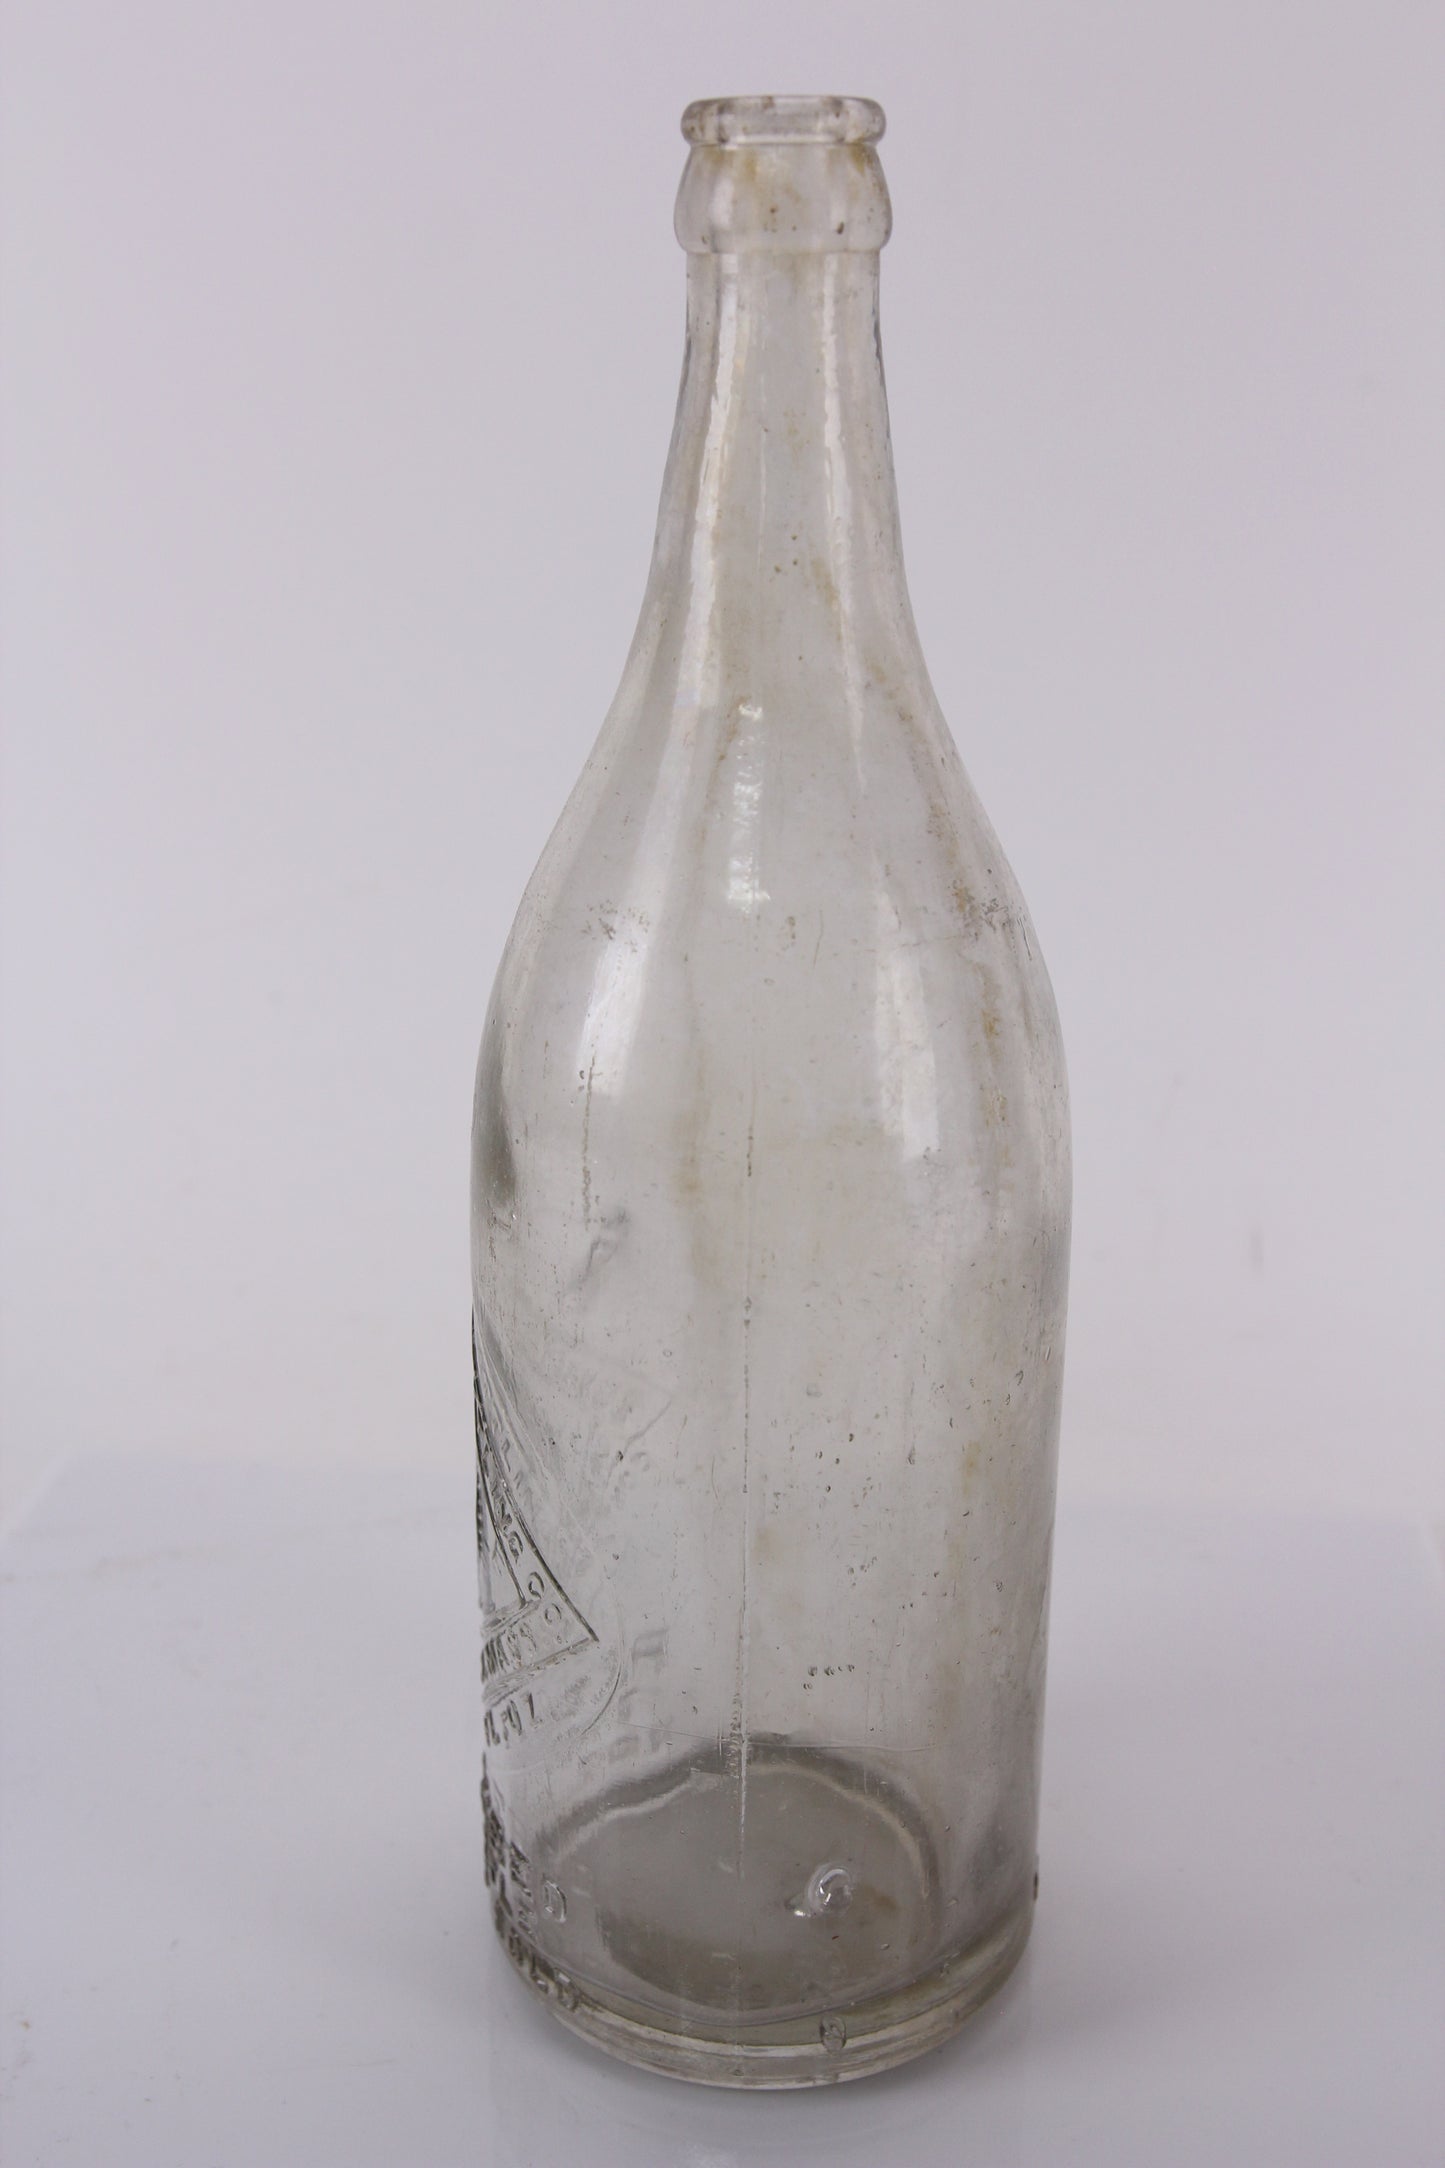 Bunker Hill Bottling Company Antique Bottle, Charlestown, Boston, Massachusetts